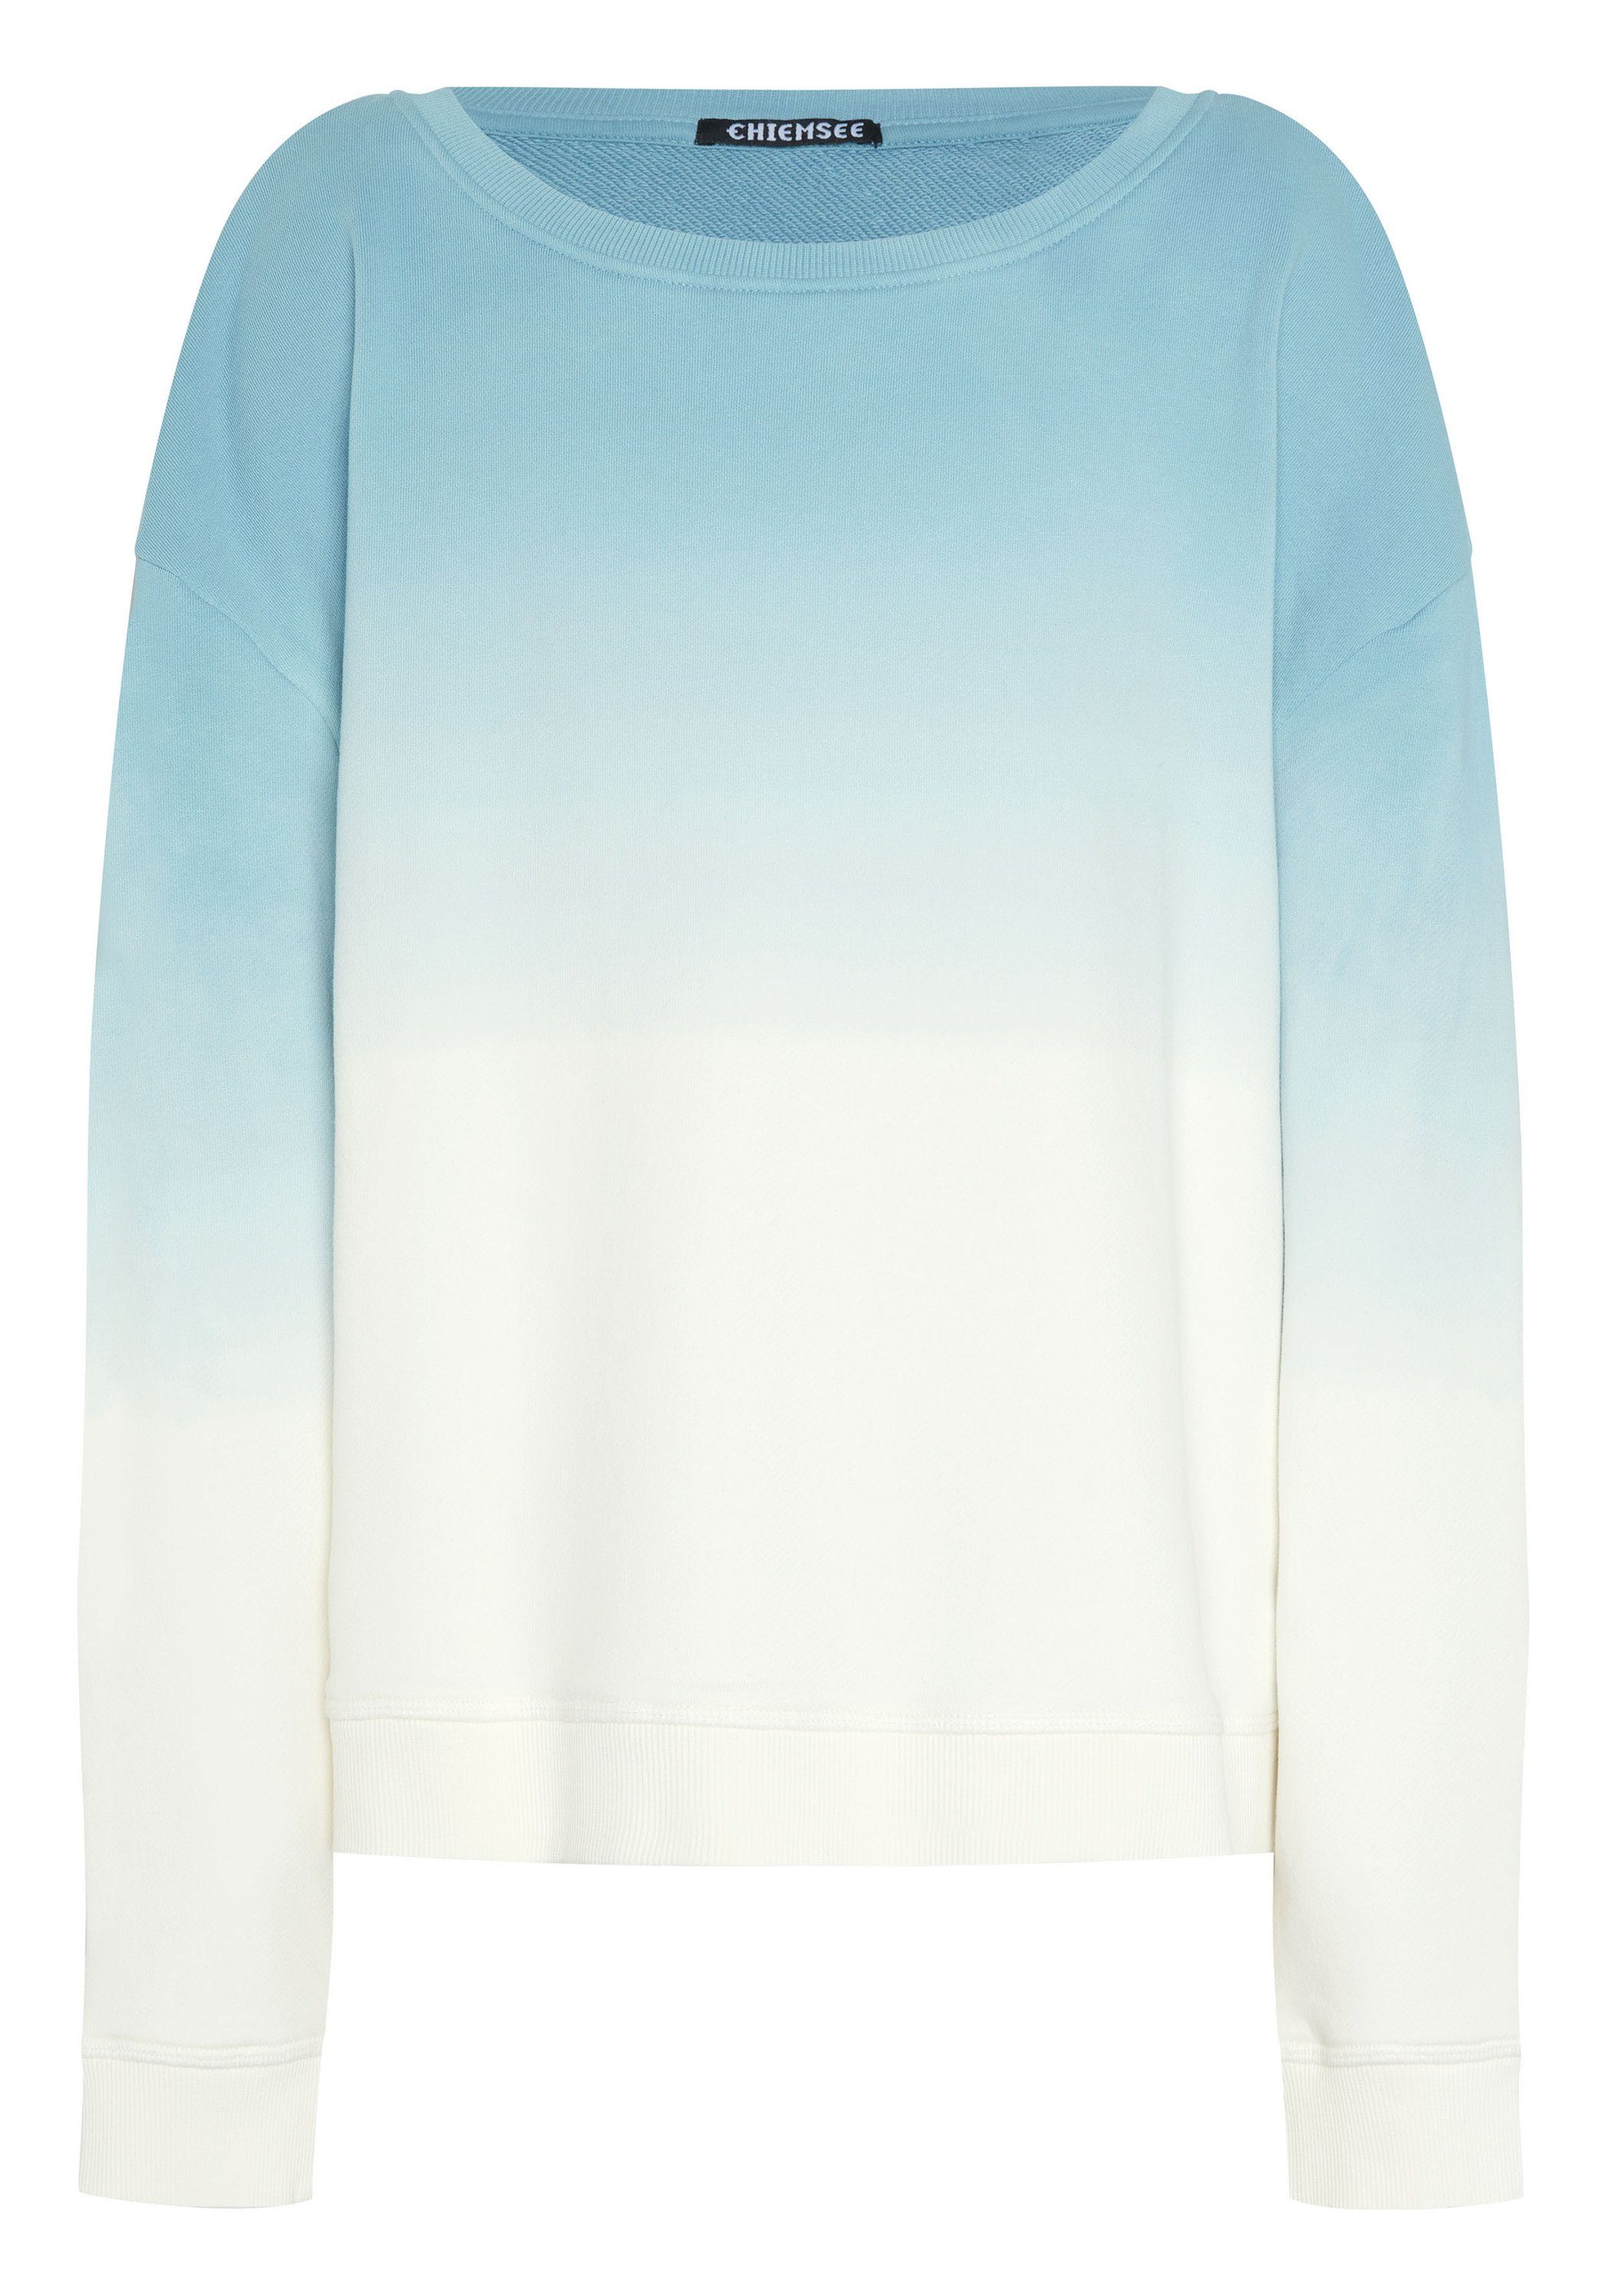 Sweatshirt und Sweater Blue/White mit 1 Chiemsee Print Farbverlauf 4510 Medium